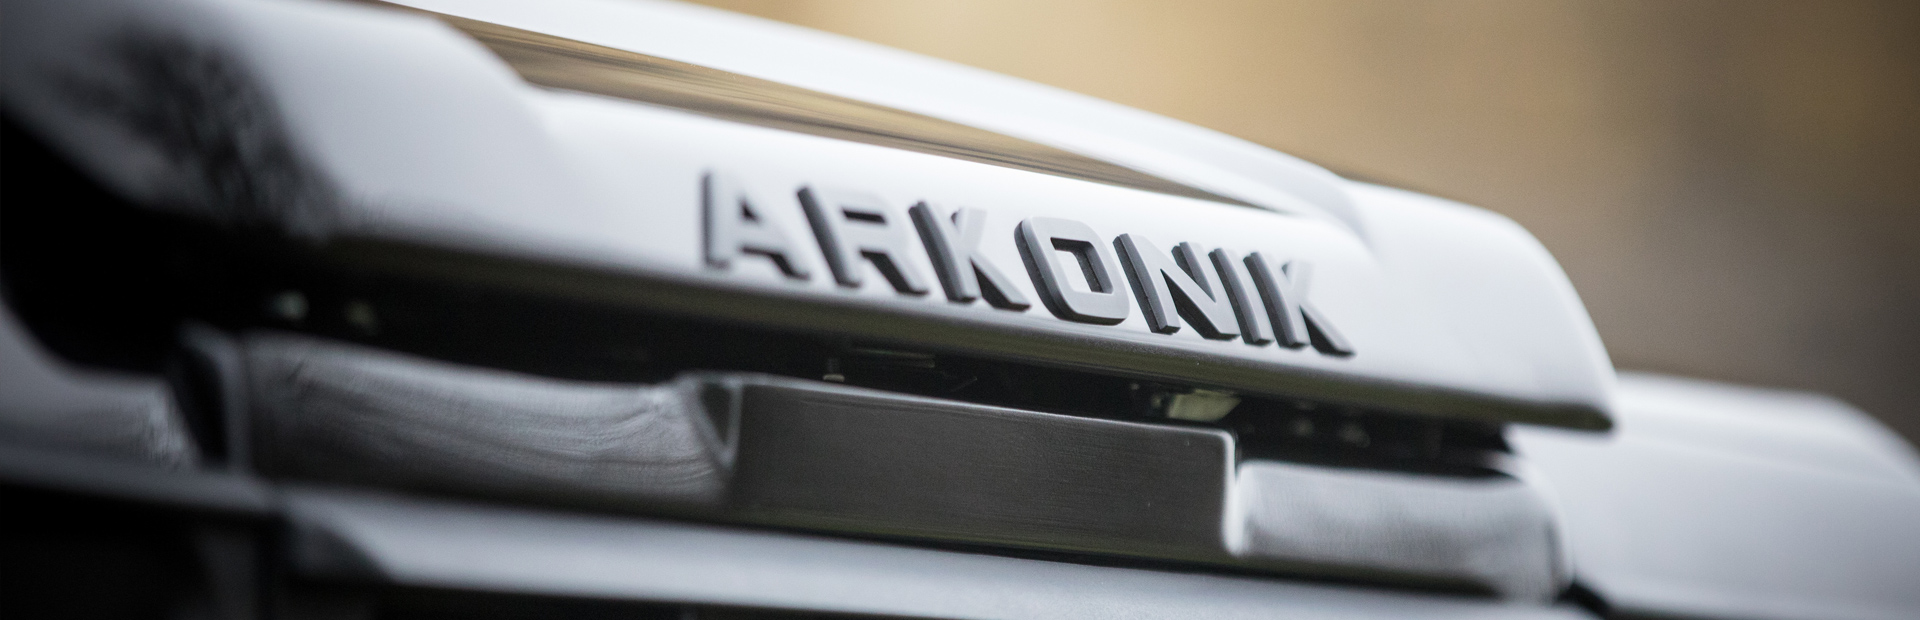 Arkonik Monarch - Custom built Land Rover Defender 110